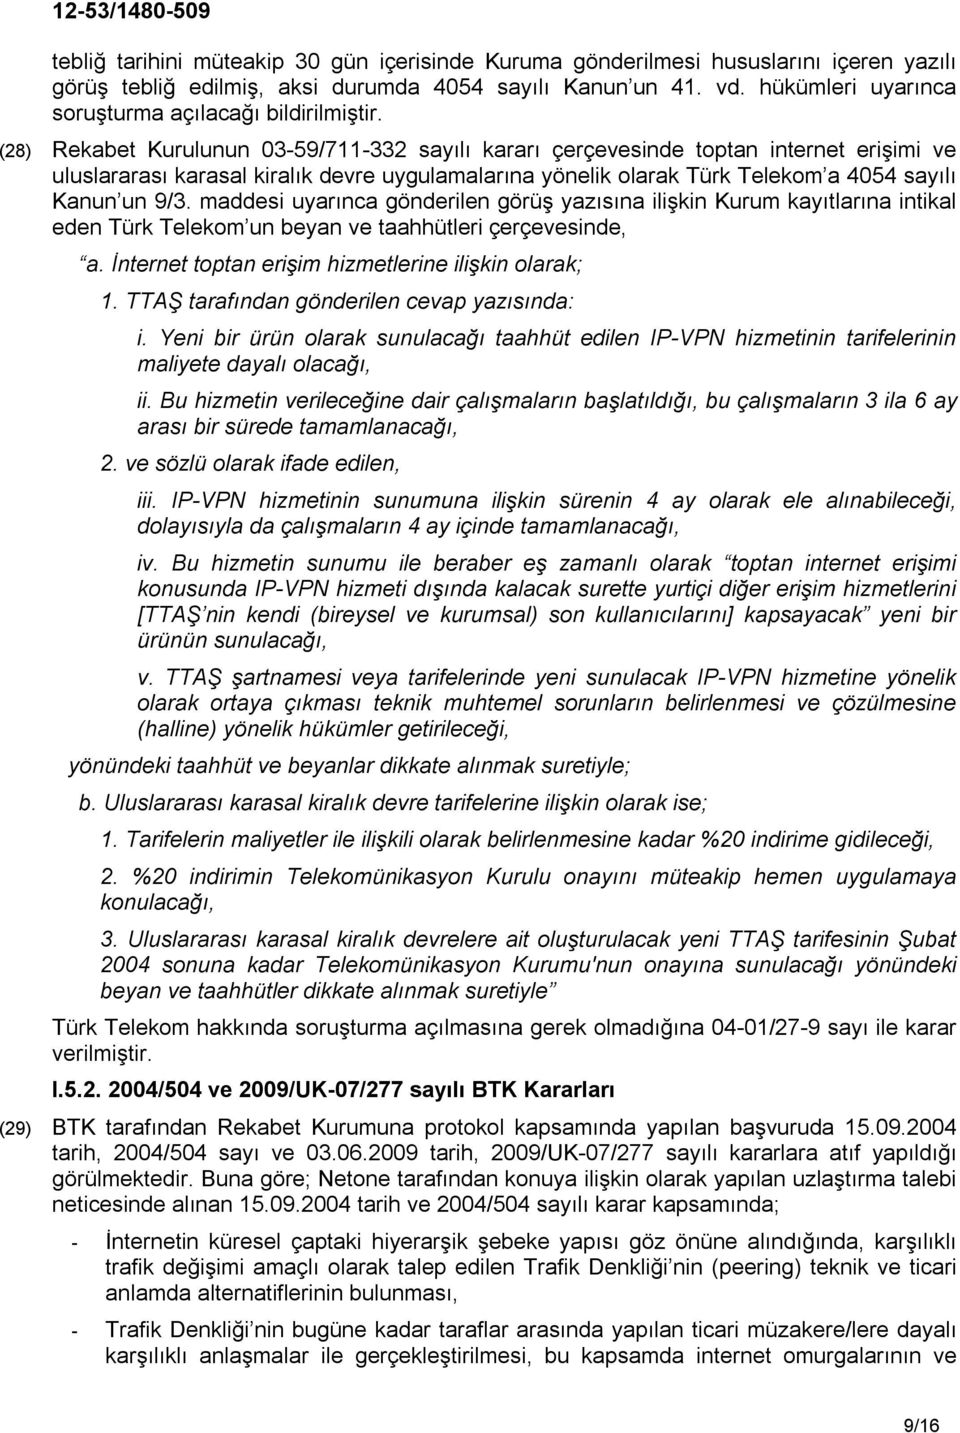 (28) Rekabet Kurulunun 03-59/711-332 sayılı kararı çerçevesinde toptan internet erişimi ve uluslararası karasal kiralık devre uygulamalarına yönelik olarak Türk Telekom a 4054 sayılı Kanun un 9/3.